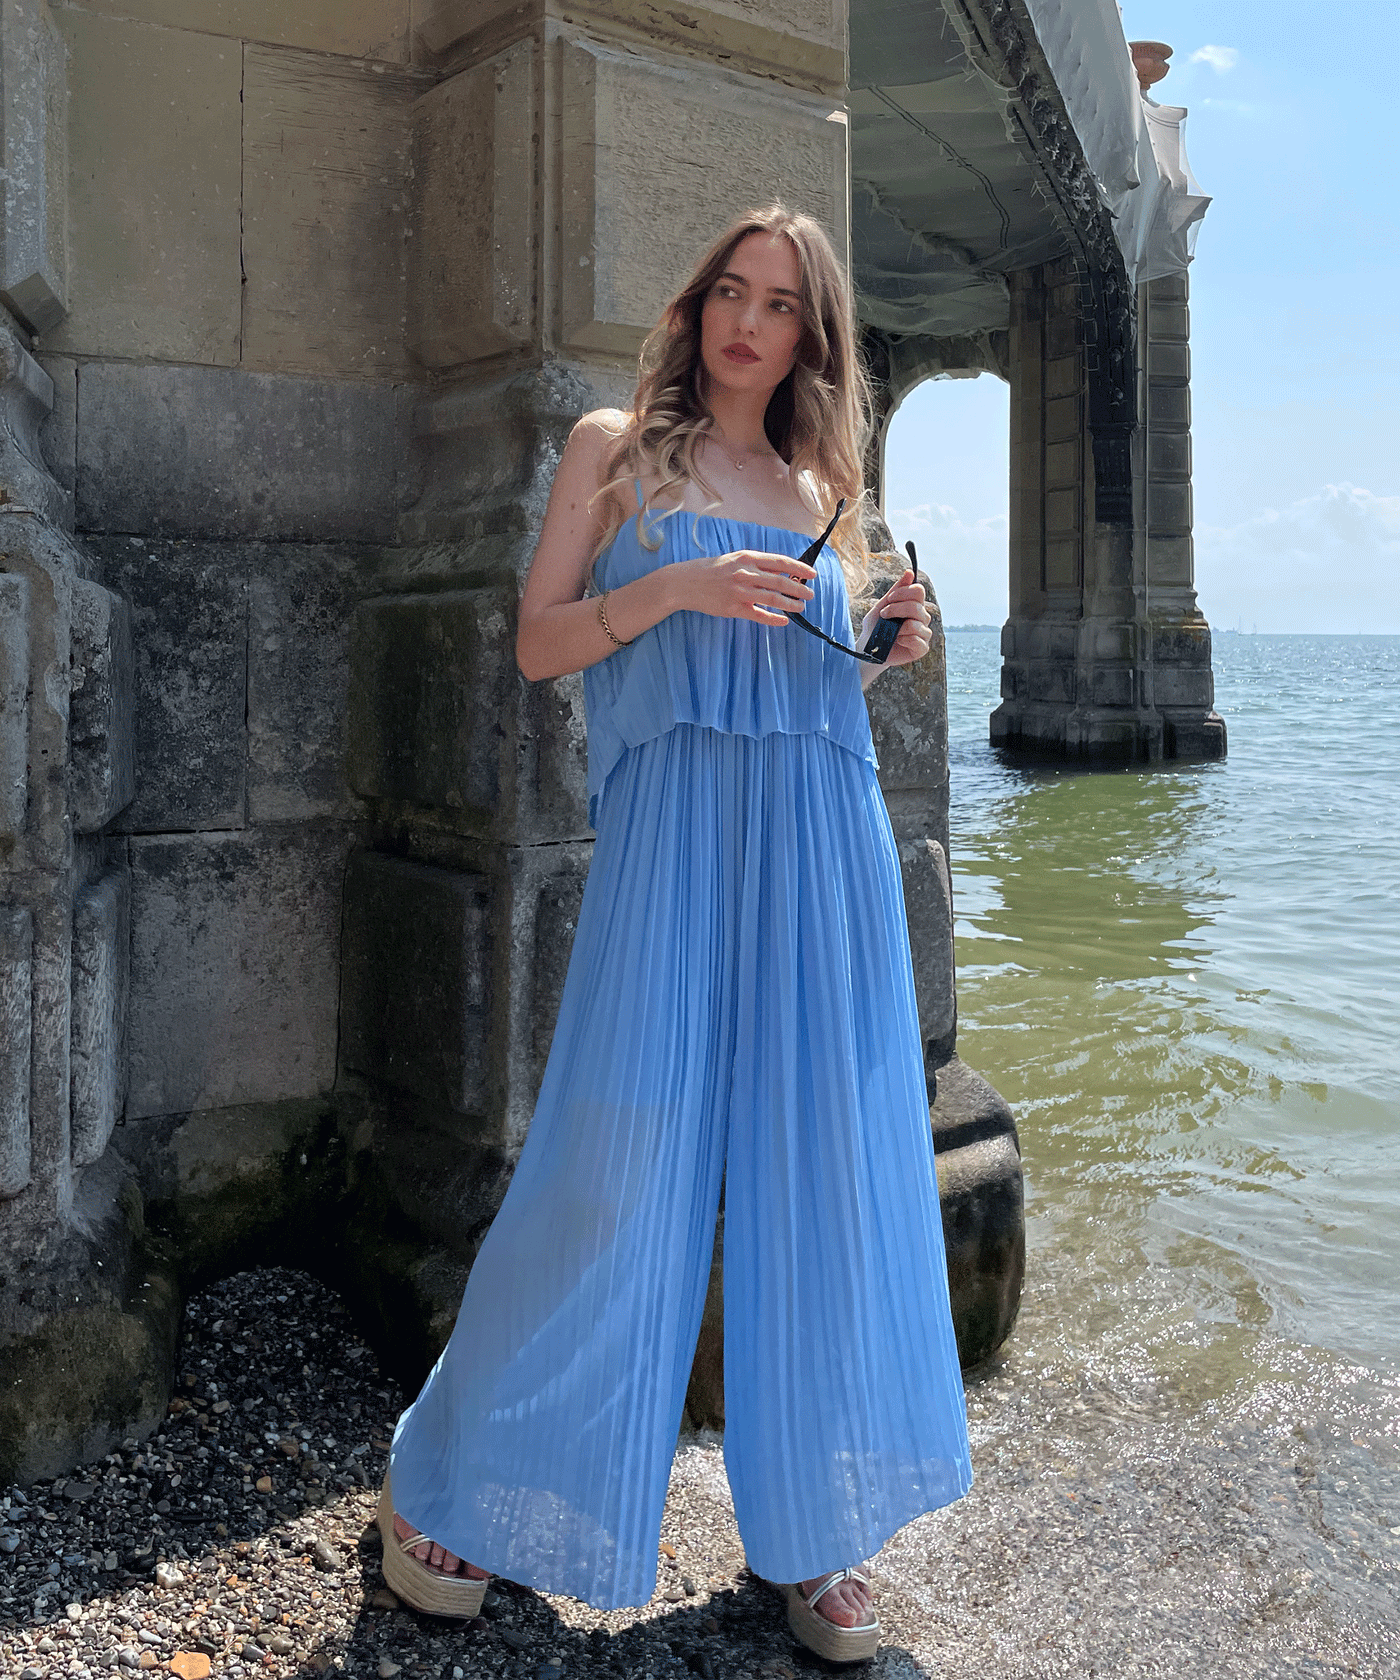 Eleganter Plissee Einteiler Hellblau  Ladypolitan - Fashion Onlineshop für Damen   